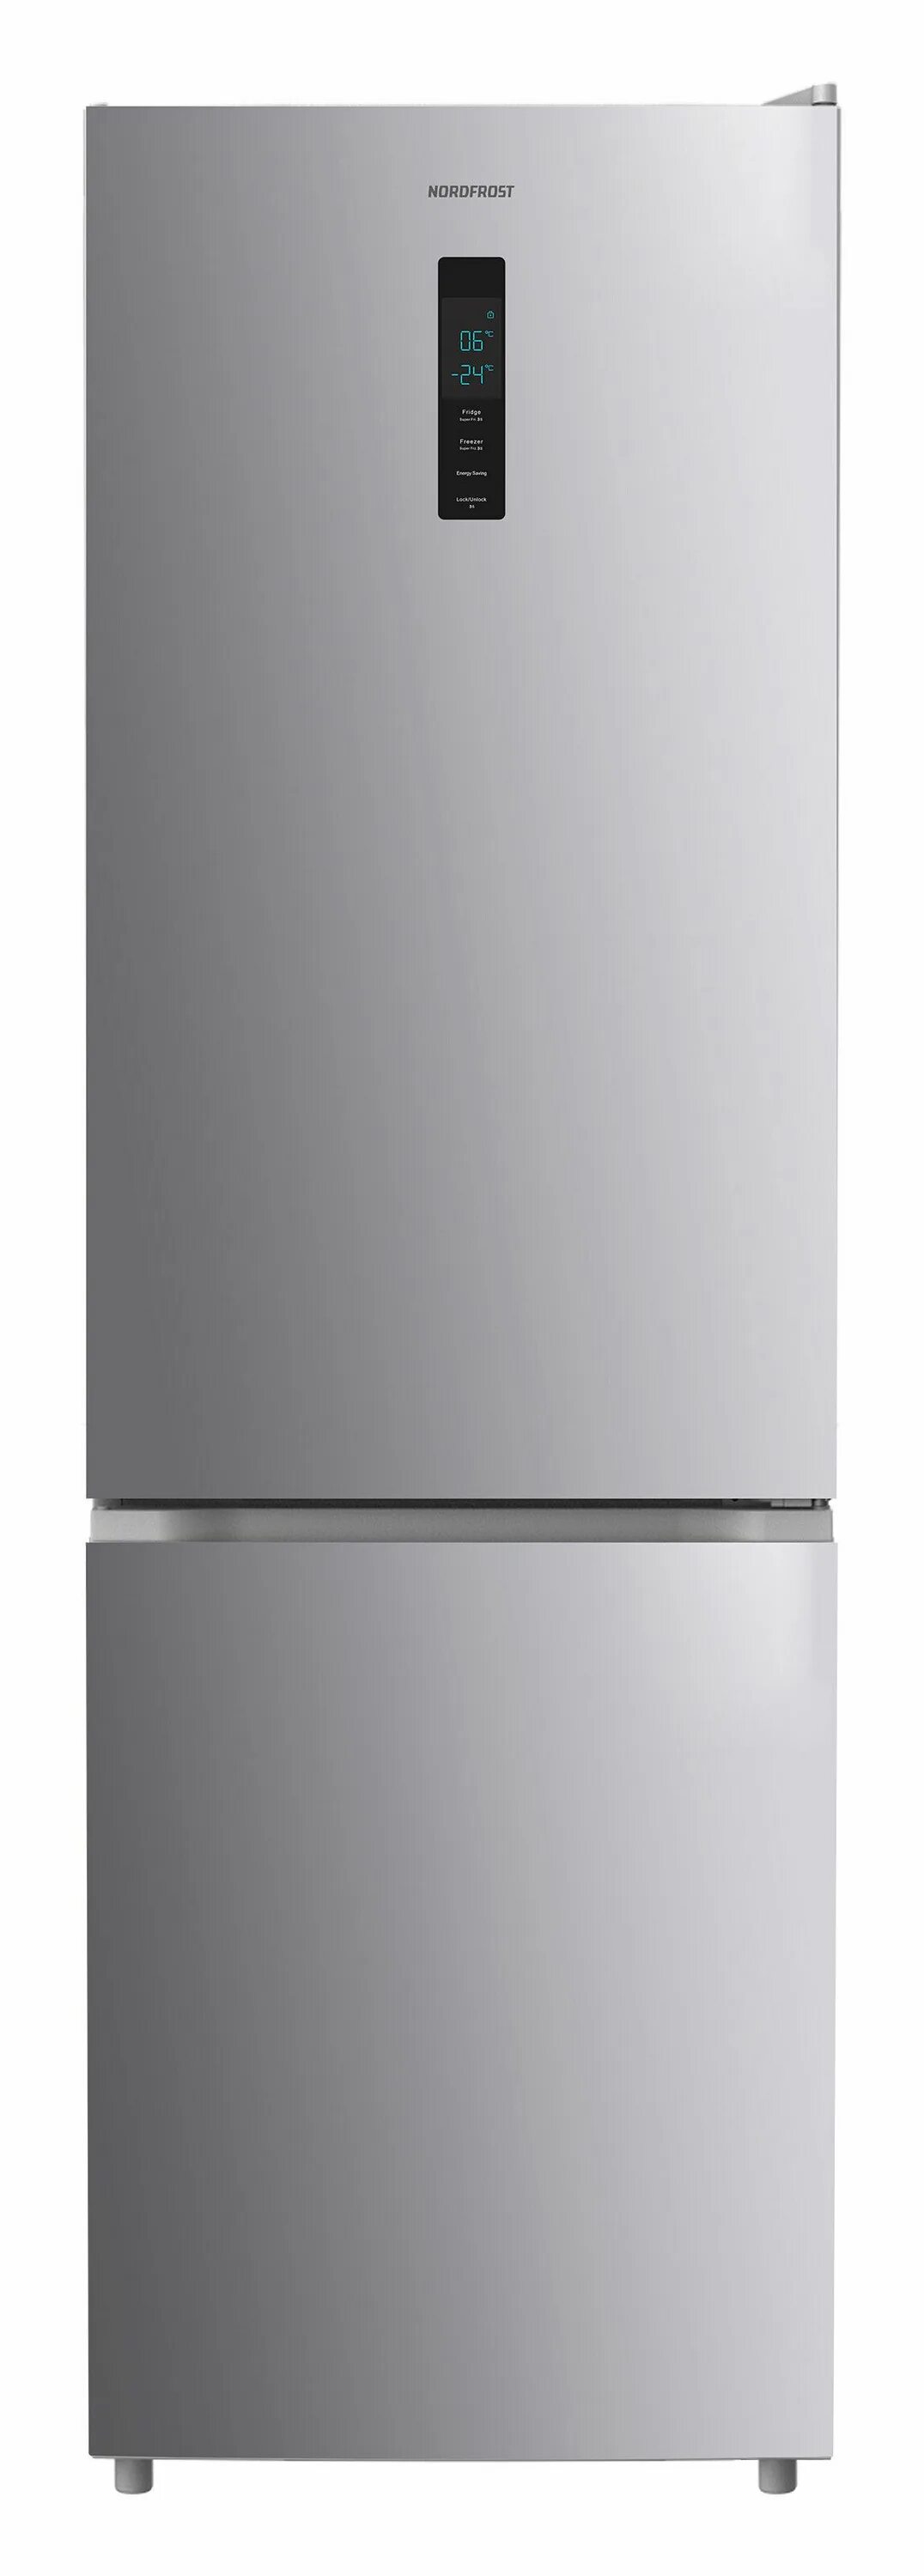 Холодильники no frost купить в москве. Холодильник Samsung RT-35 k5440s8. Холодильник Haier c2f636cfrg. Холодильник Haier c2f637cxrg. Холодильник с морозильником Samsung rt35k5410s9/WT серебристый.